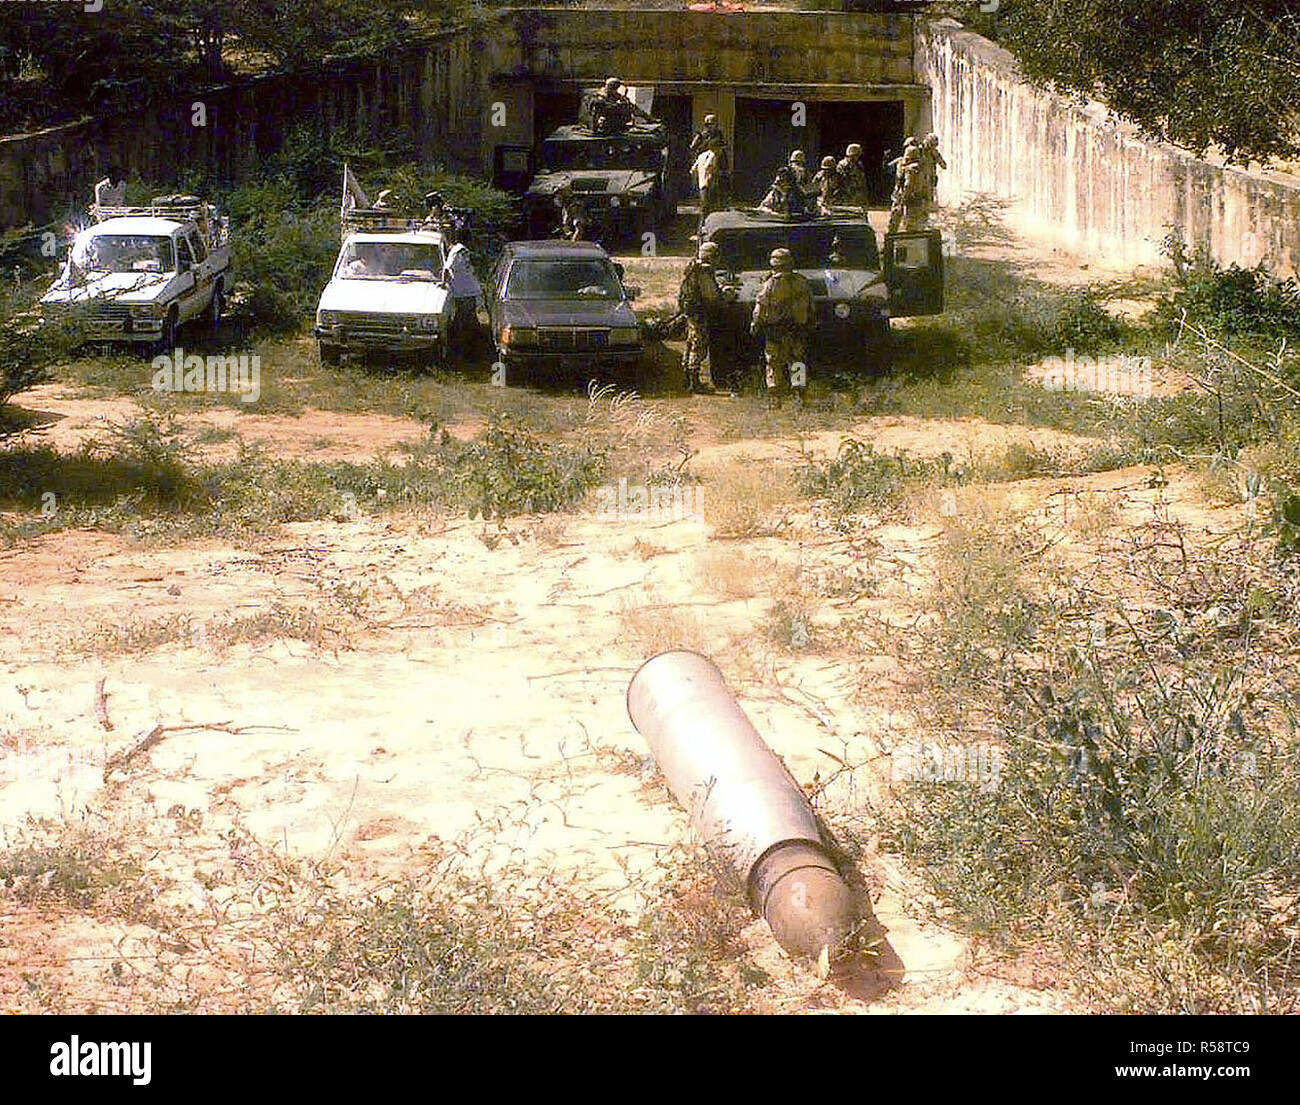 Der Eintritt einer Schätzungsweise 38 Bunker entdeckt, nördlich von Mogadischu, Somalia, von Abgeordneten aus den 511 . Military Police Company, Fort Drum, New York. Die MPs escort Mitglieder der Medien in den Bunker. Zwei M998 High-Mobility Multipurpose Radfahrzeuge (Hmmwv) nahe dem Eingang zusammen mit drei Fahrzeugen, die von den Medien Gefahren abgestellt sind. Eine große Unbekannte artillery Shell ist im Vordergrund gesehen. Diese Mission ist in der direkten Unterstützung der Operation Restore Hope. Stockfoto